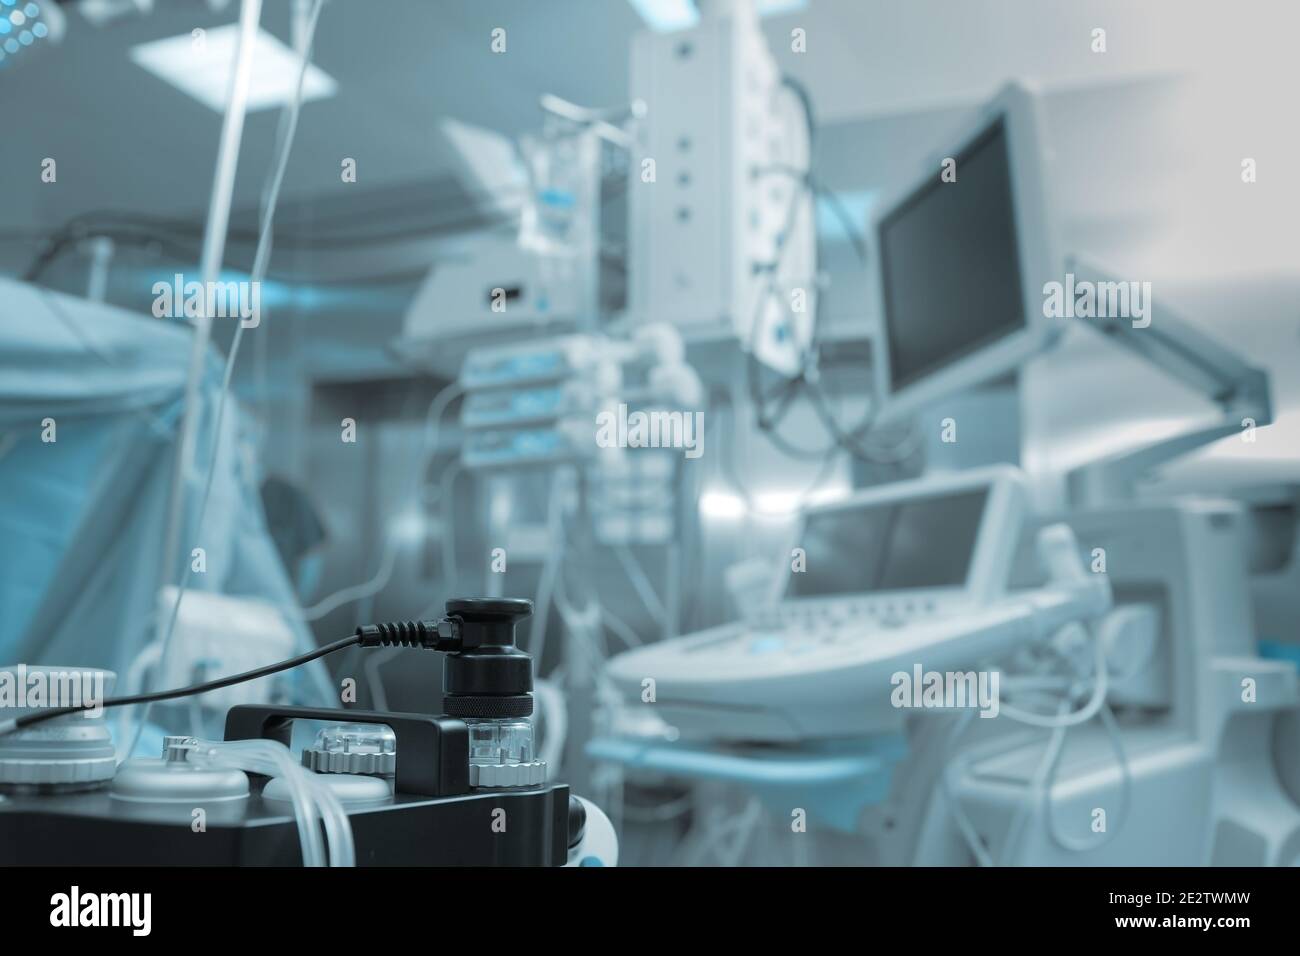 Equipo de respiración para anestesia en el quirófano con múltiple dispositivos Foto de stock